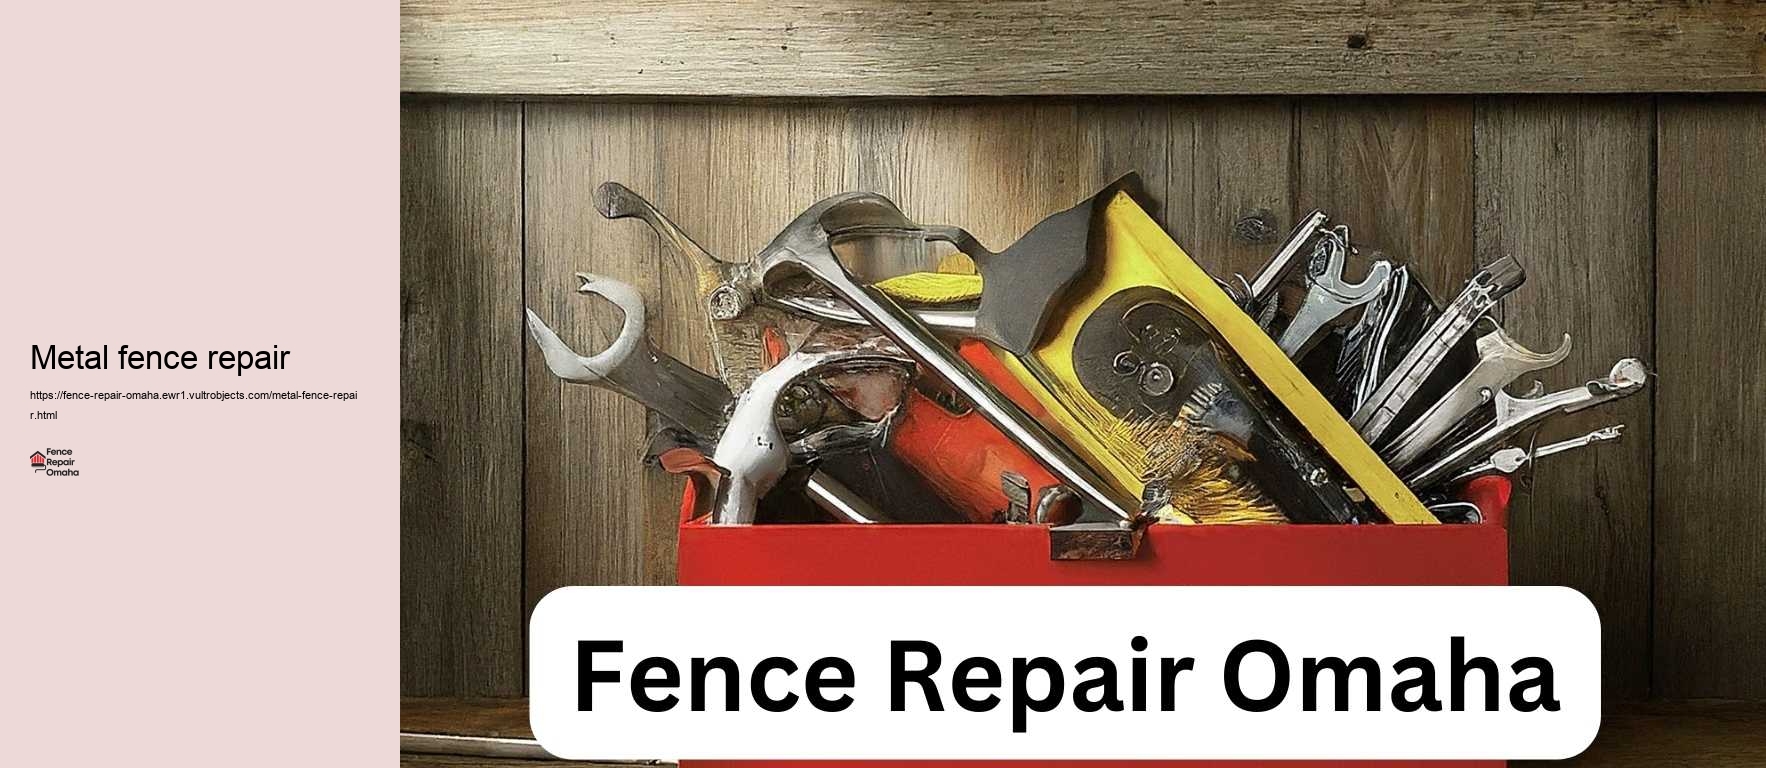 Metal fence repair